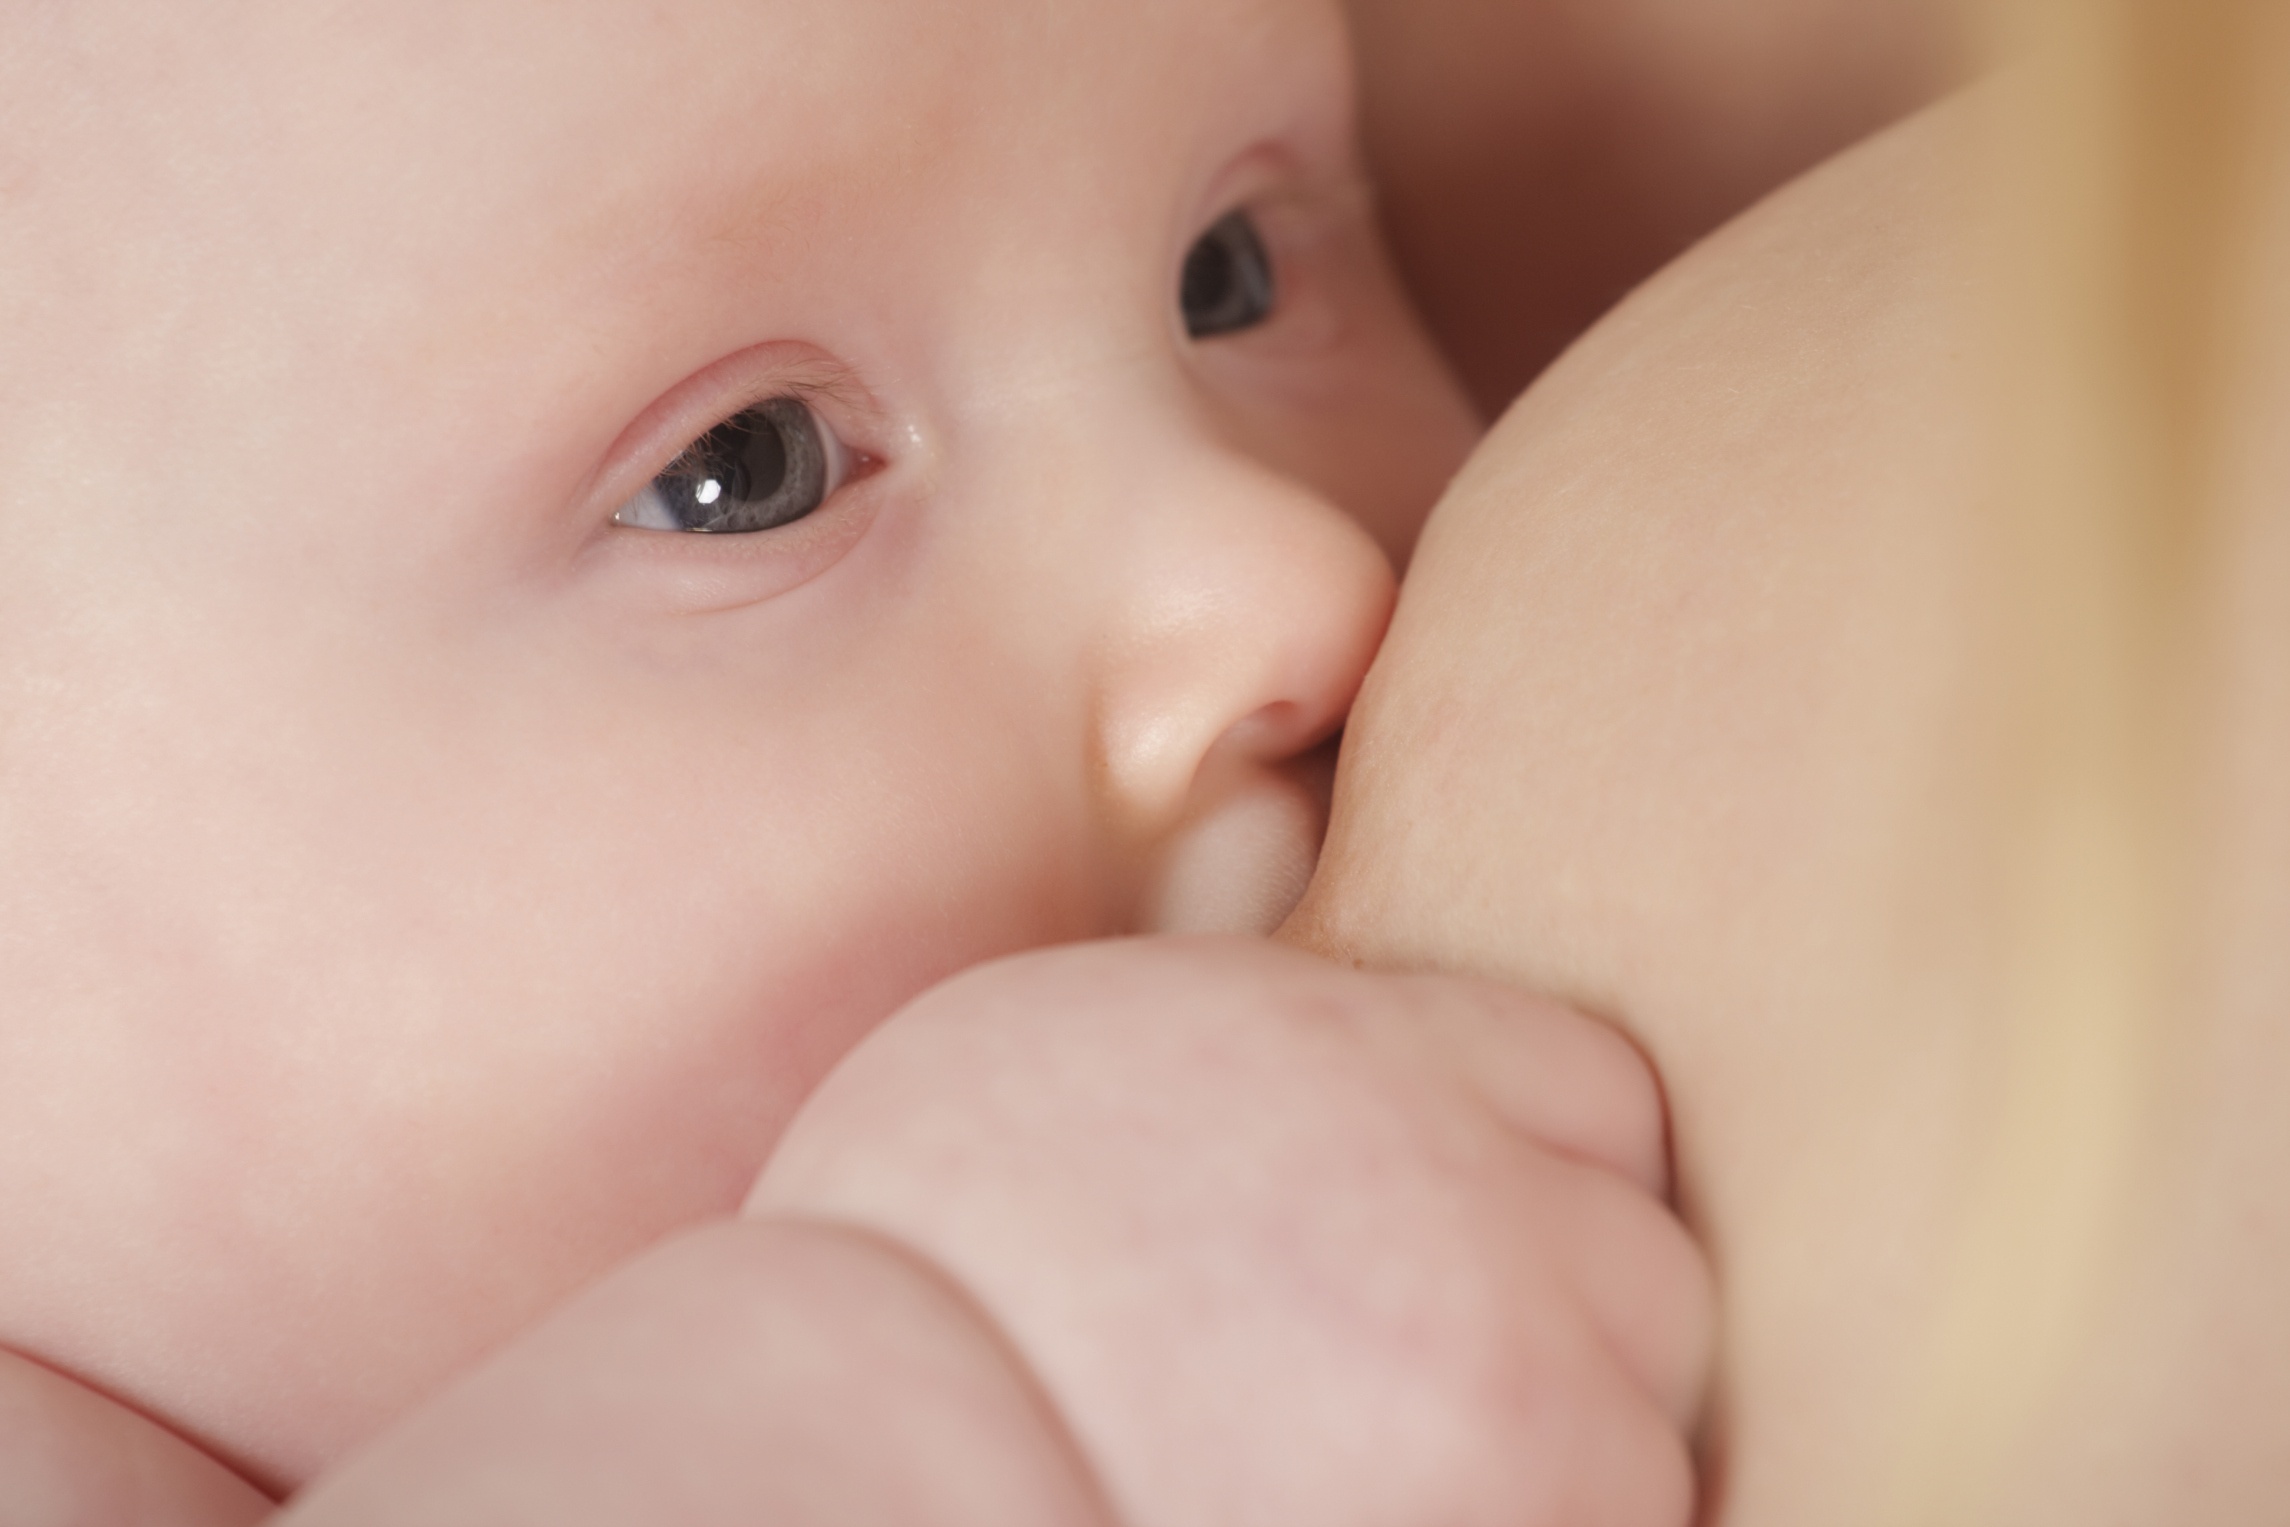 Amamantar protege a bebés de infecciones